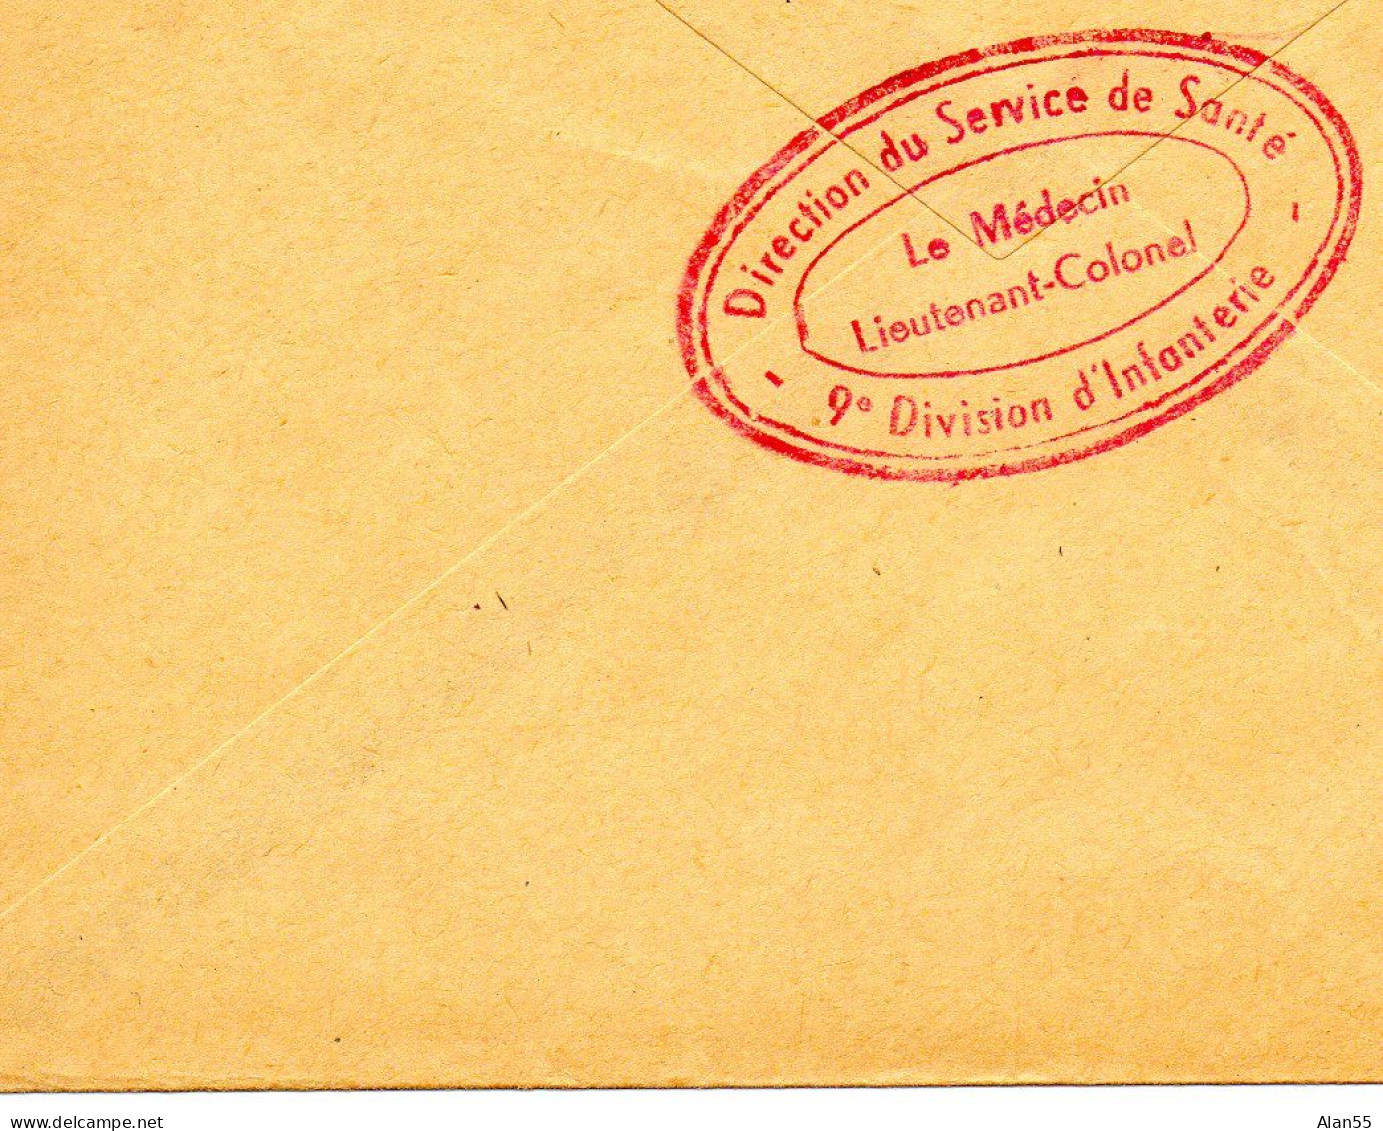 ALGERIE.(GUERRE).1956.  "DIRECTION SERVICE DE SANTE-9ème DIVISION D'INFANTERIE".LETTRE F.M. - Algerienkrieg